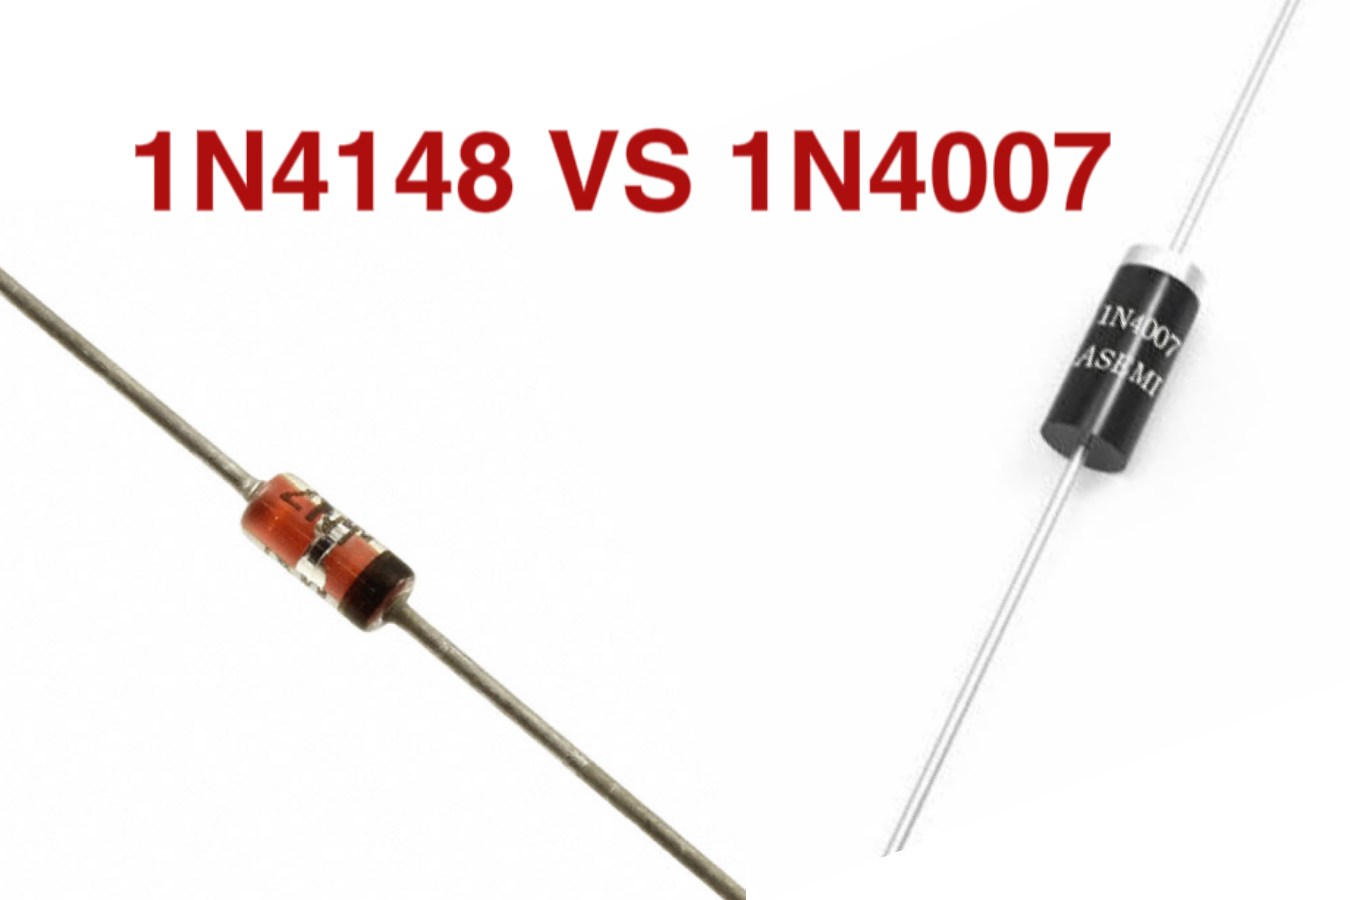 Comparison between 1N4148 and 1N4007